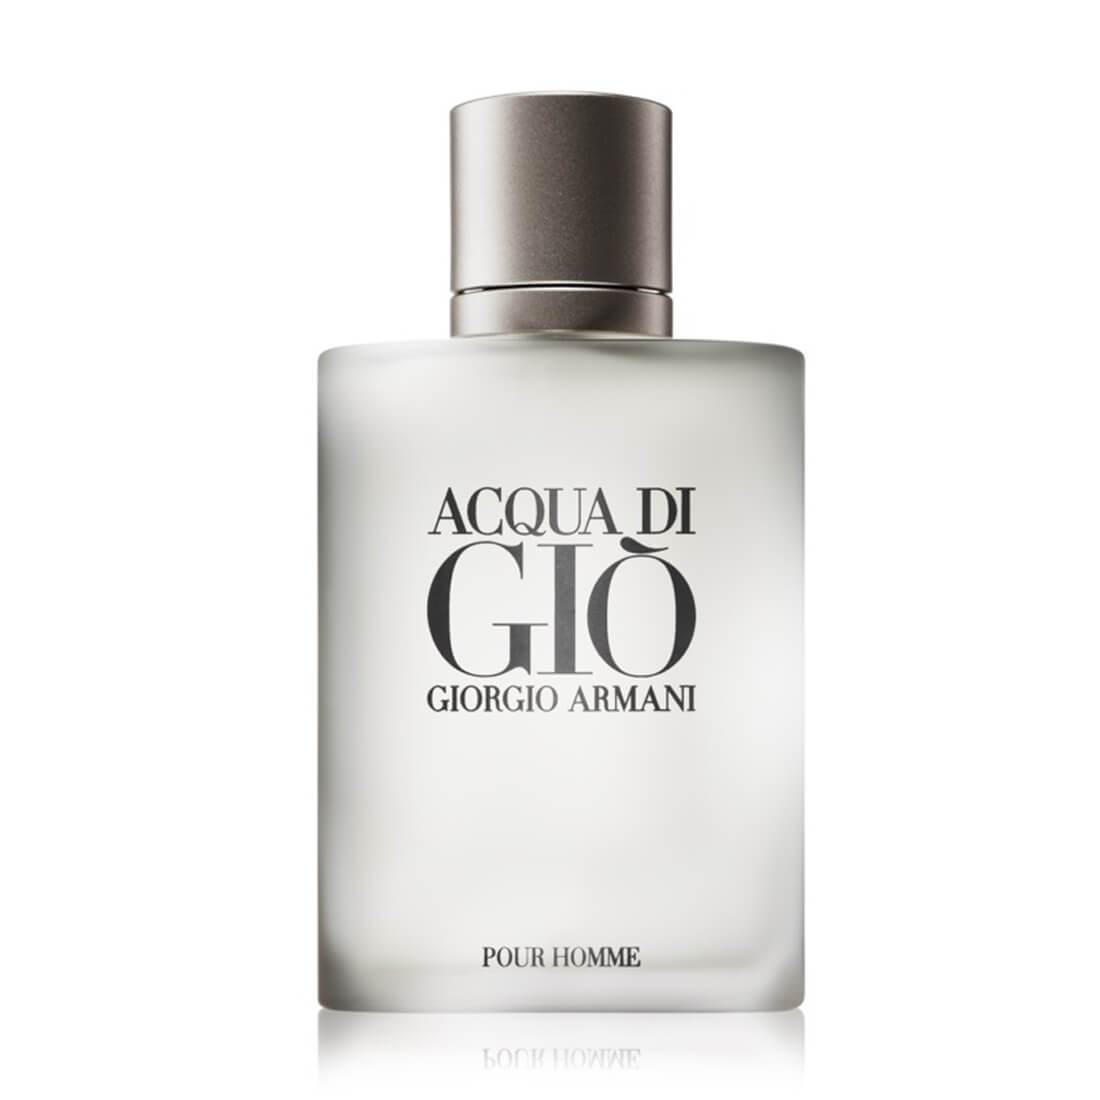 Giorgio Armani Acqua Di Gio EDT Perfume For Men 100ml | Tidlon